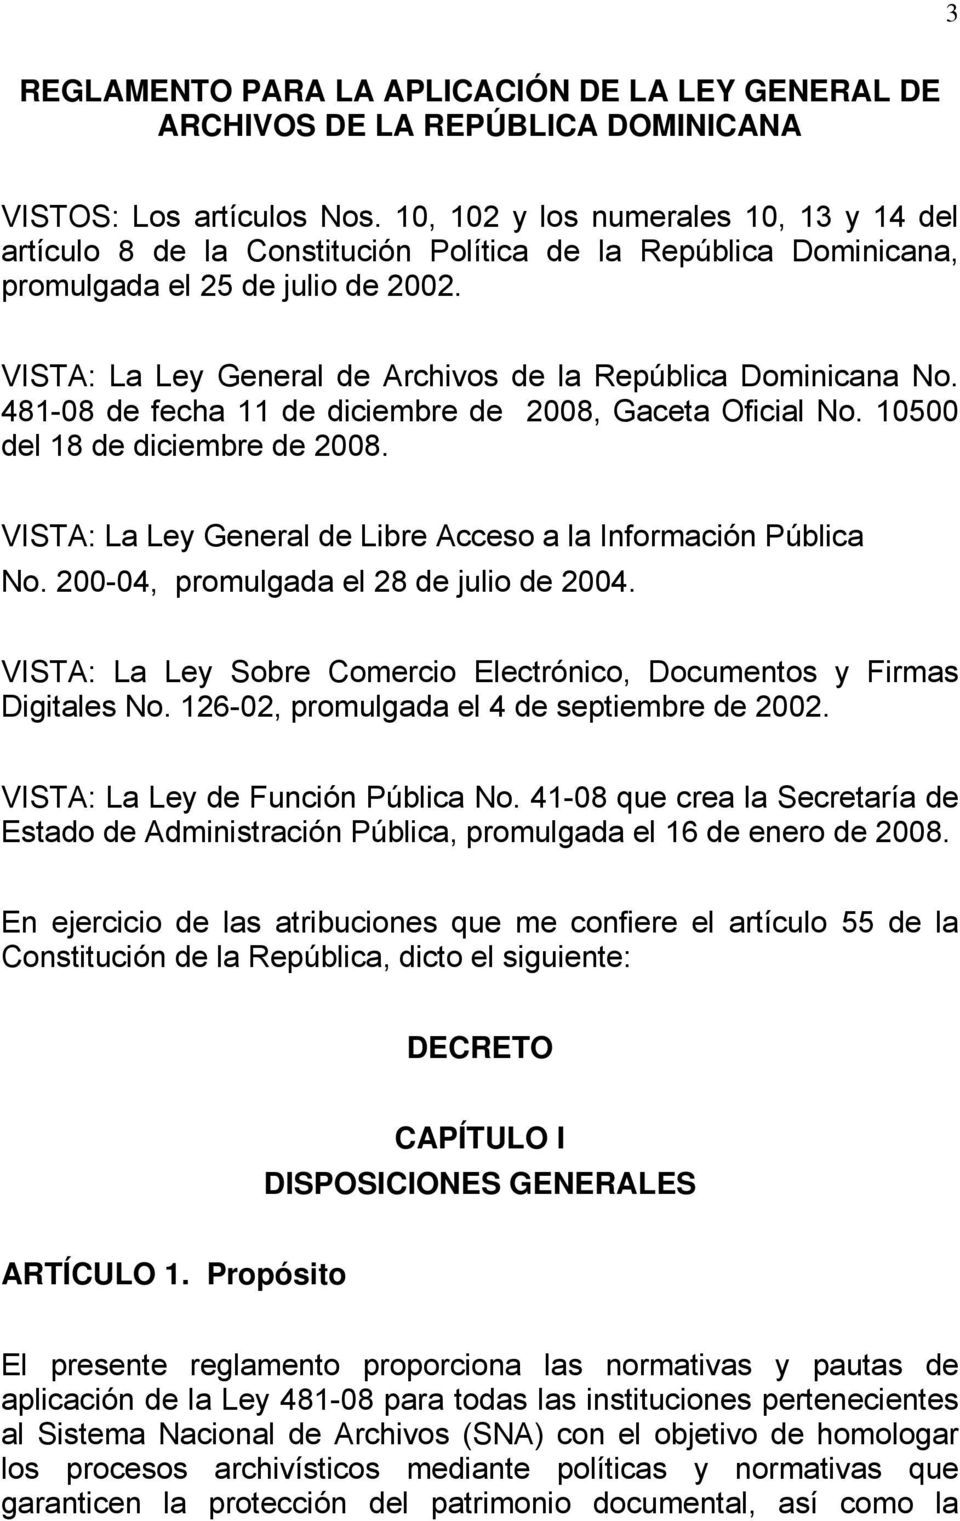 VISTA: La Ley General de Archivos de la República Dominicana No. 481-08 de fecha 11 de diciembre de 2008, Gaceta Oficial No. 10500 del 18 de diciembre de 2008.